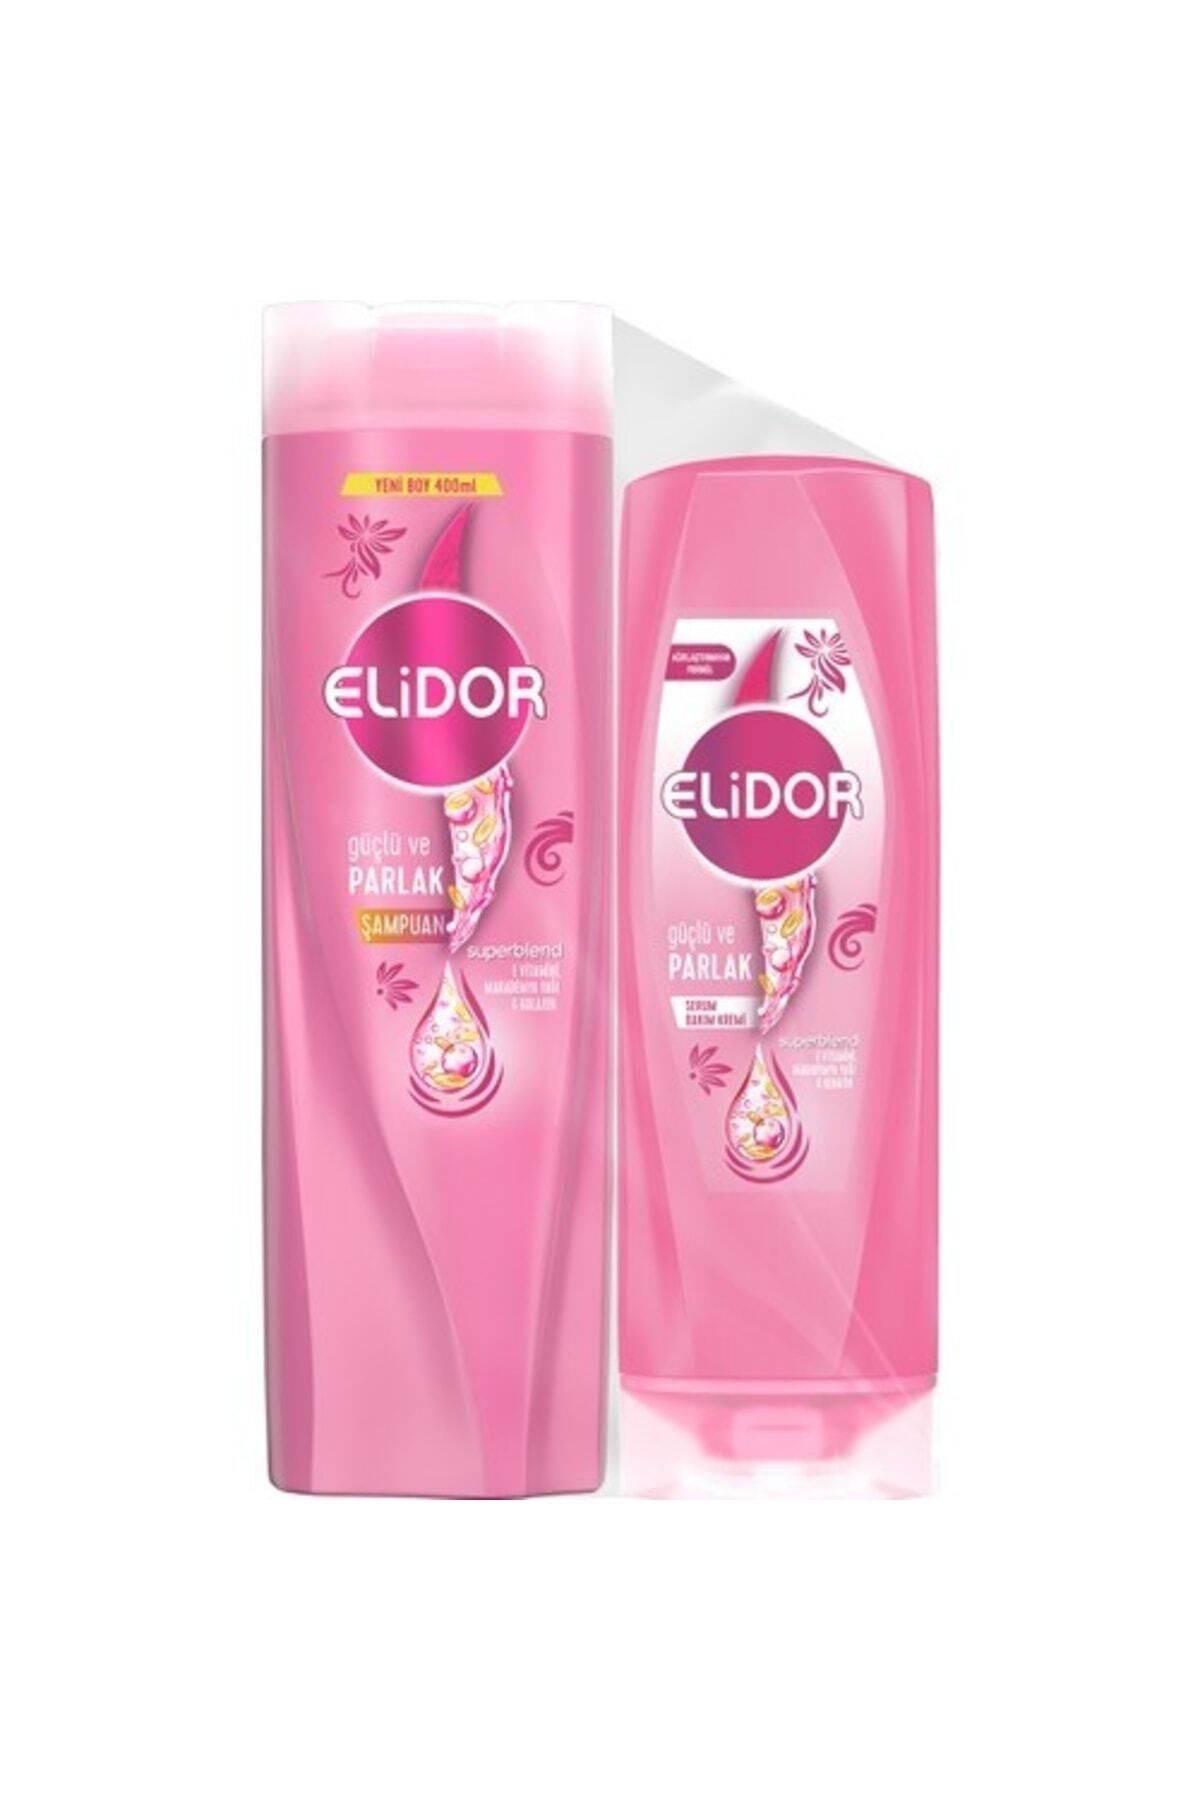 Elidor Superblend Saç Bakım Şampuanı Güçlü Ve Parlak 400 Ml + Serum Bakım Kremi 200 Ml